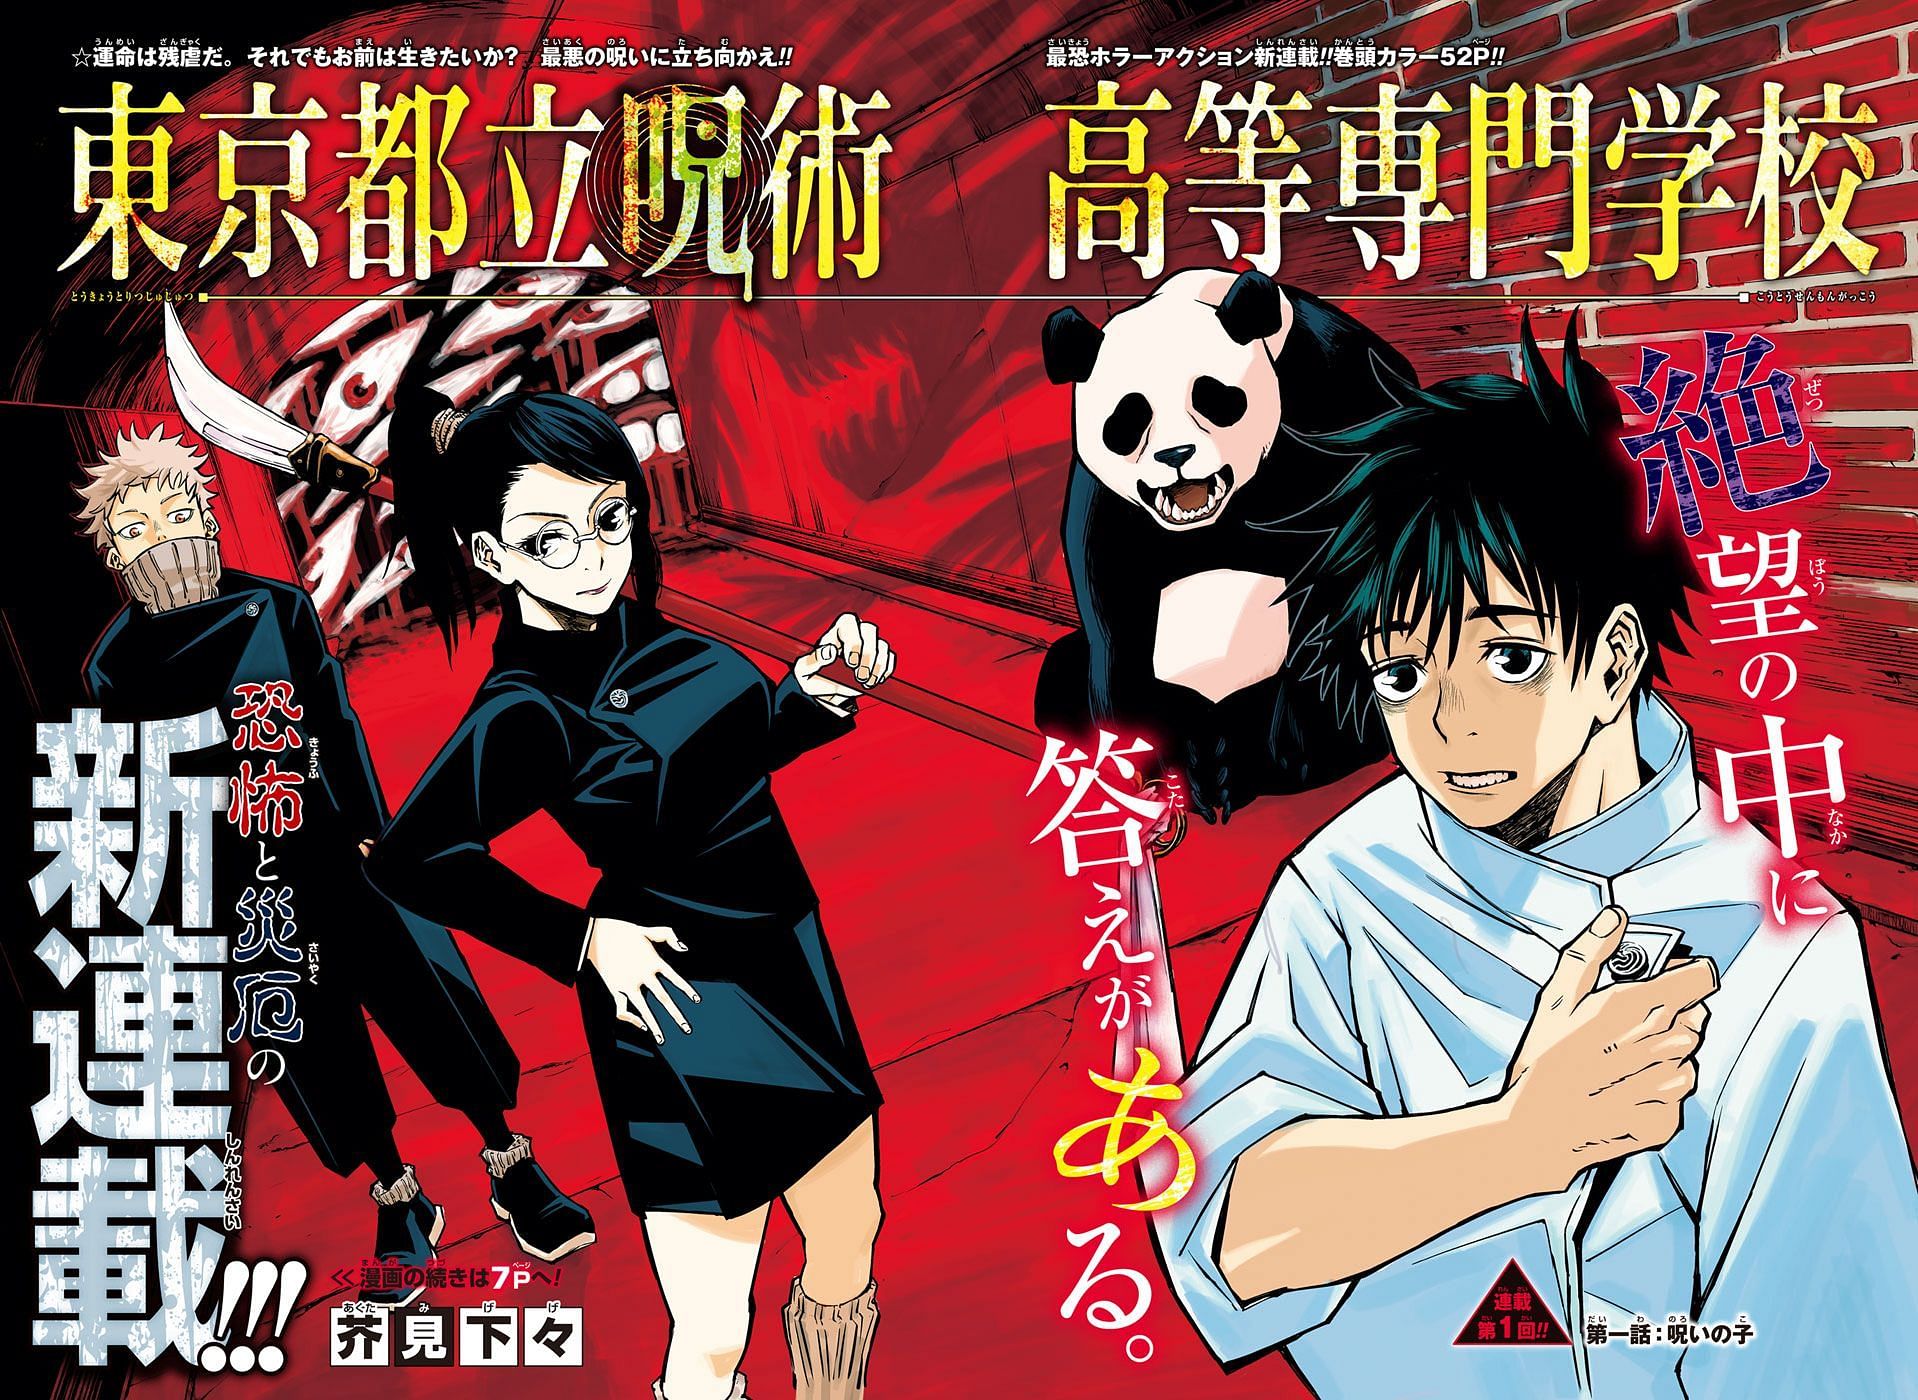 Jujutsu Kaisen 0 official manga art (Image via Shueisha)